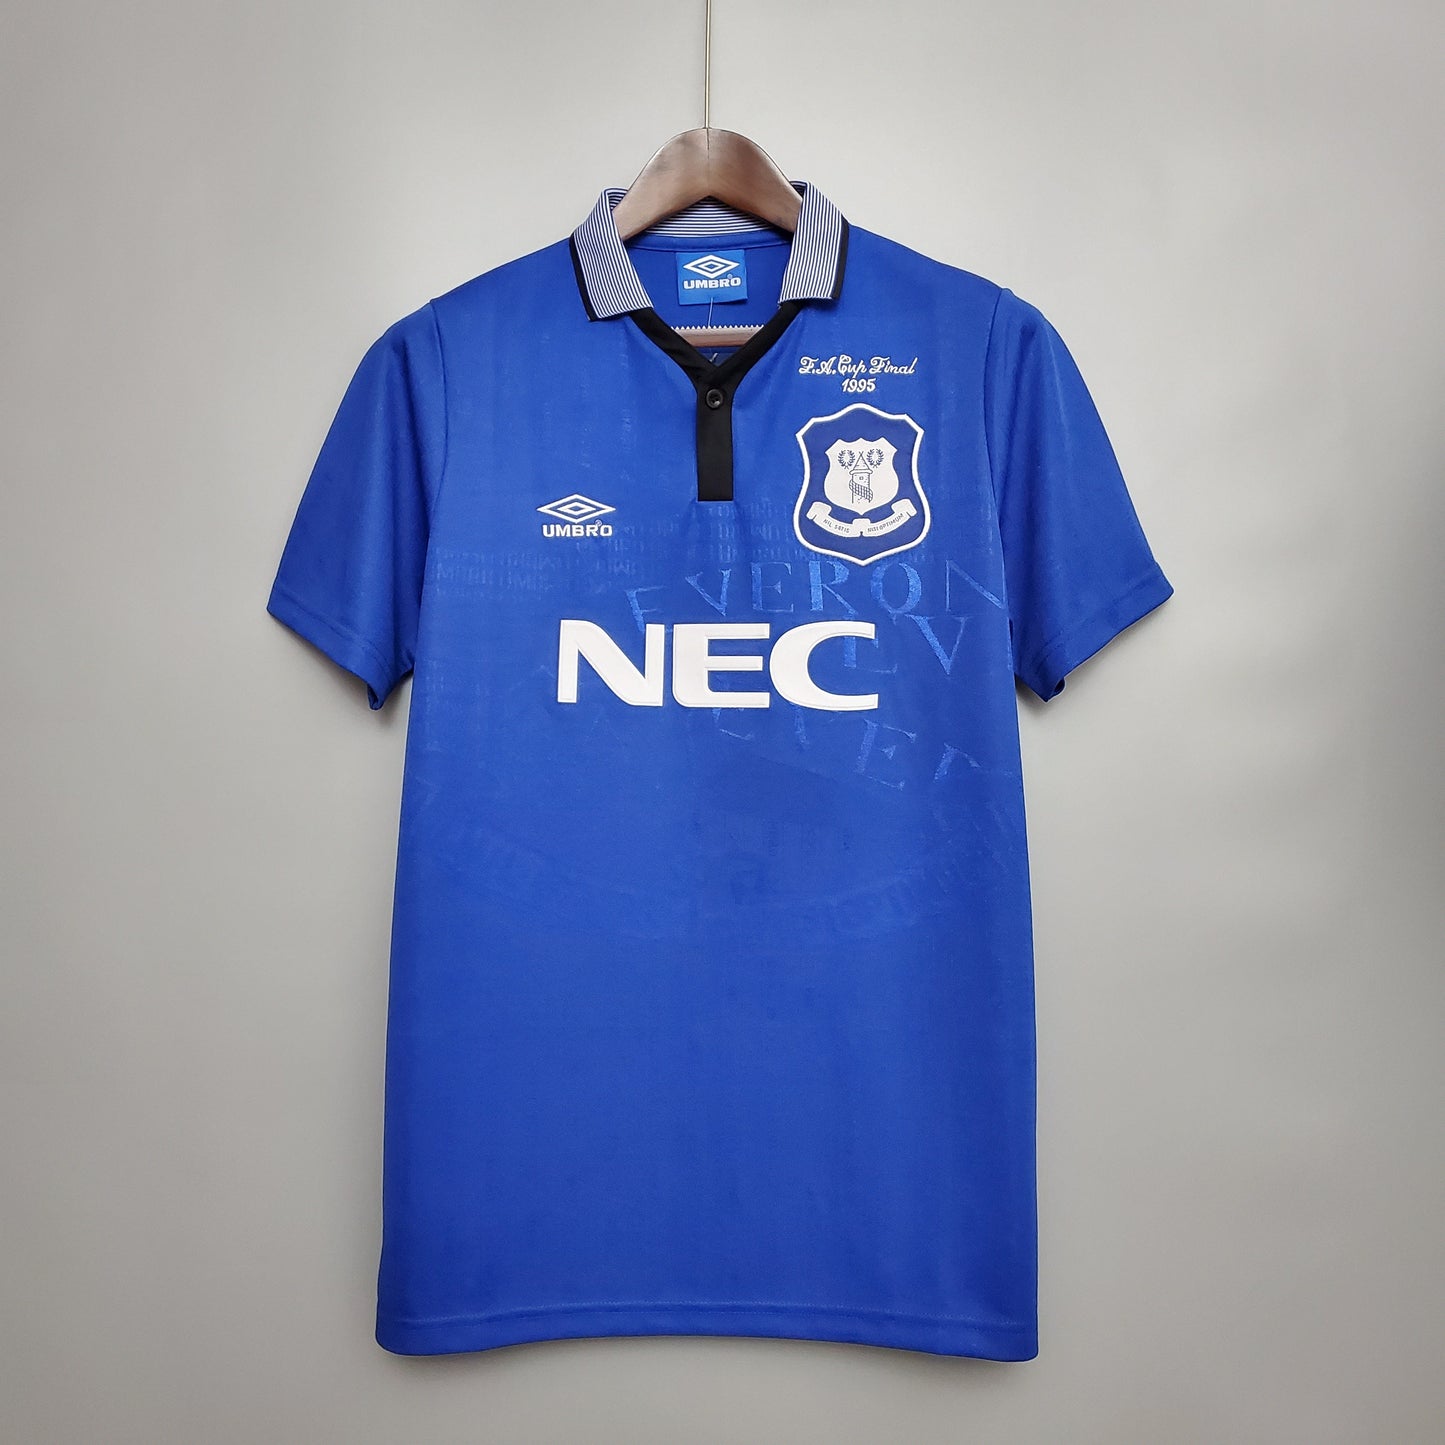 Retro Everton Home 94/95